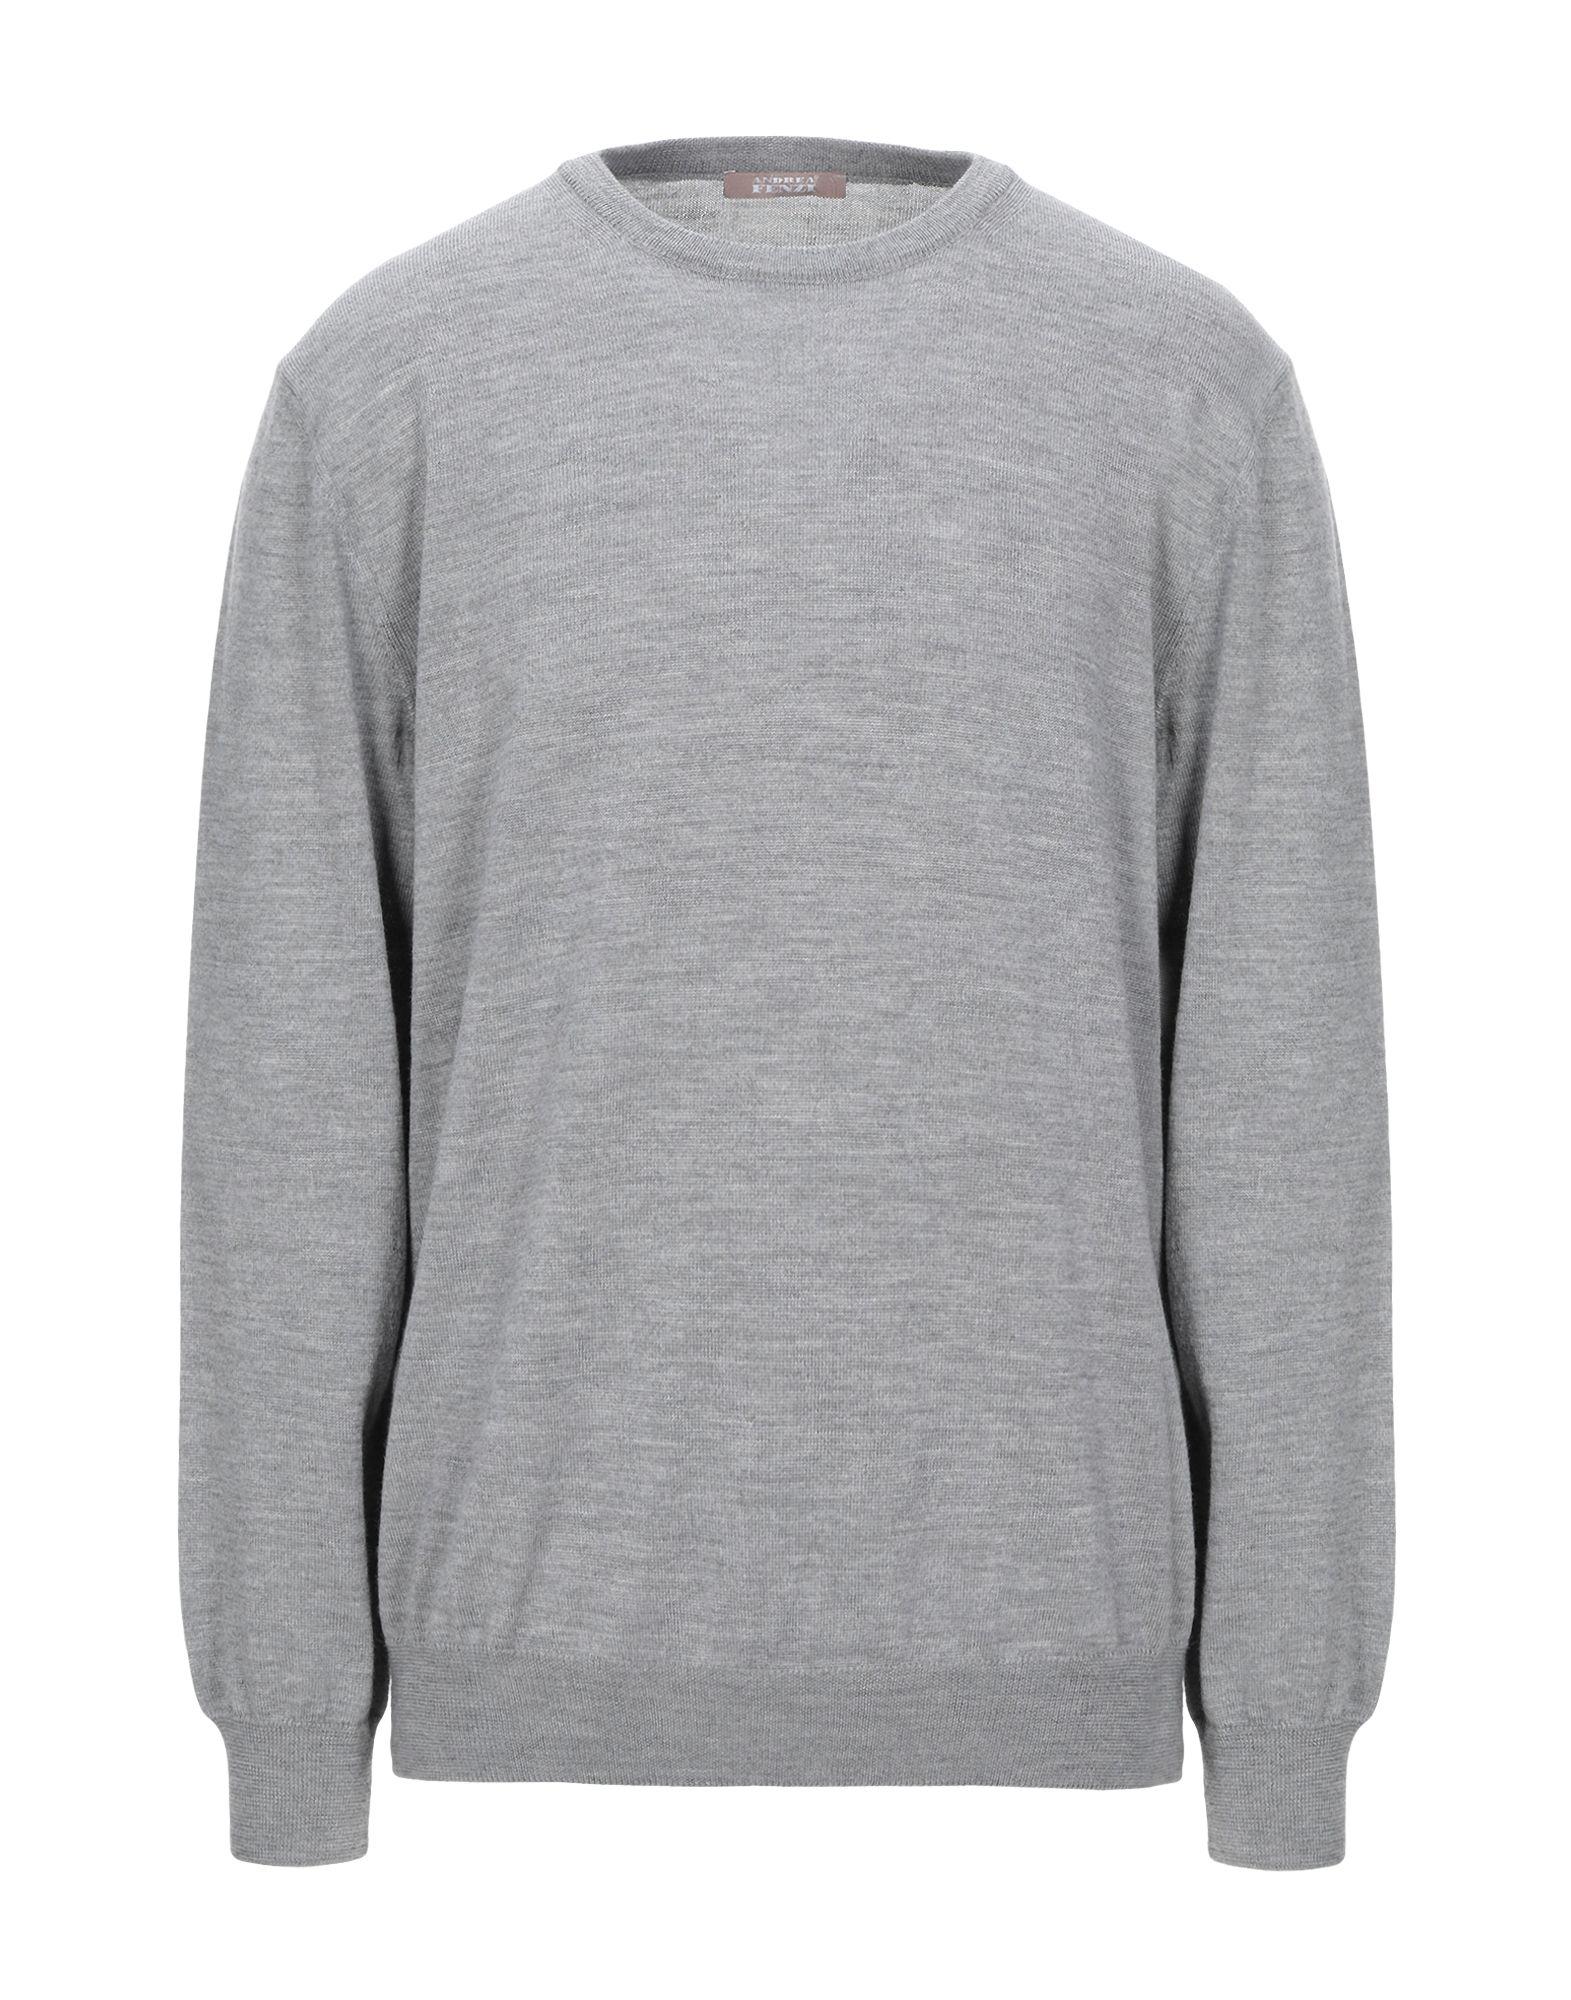 Andrea Fenzi Wool Sweater in Grey (Gray) for Men - Lyst